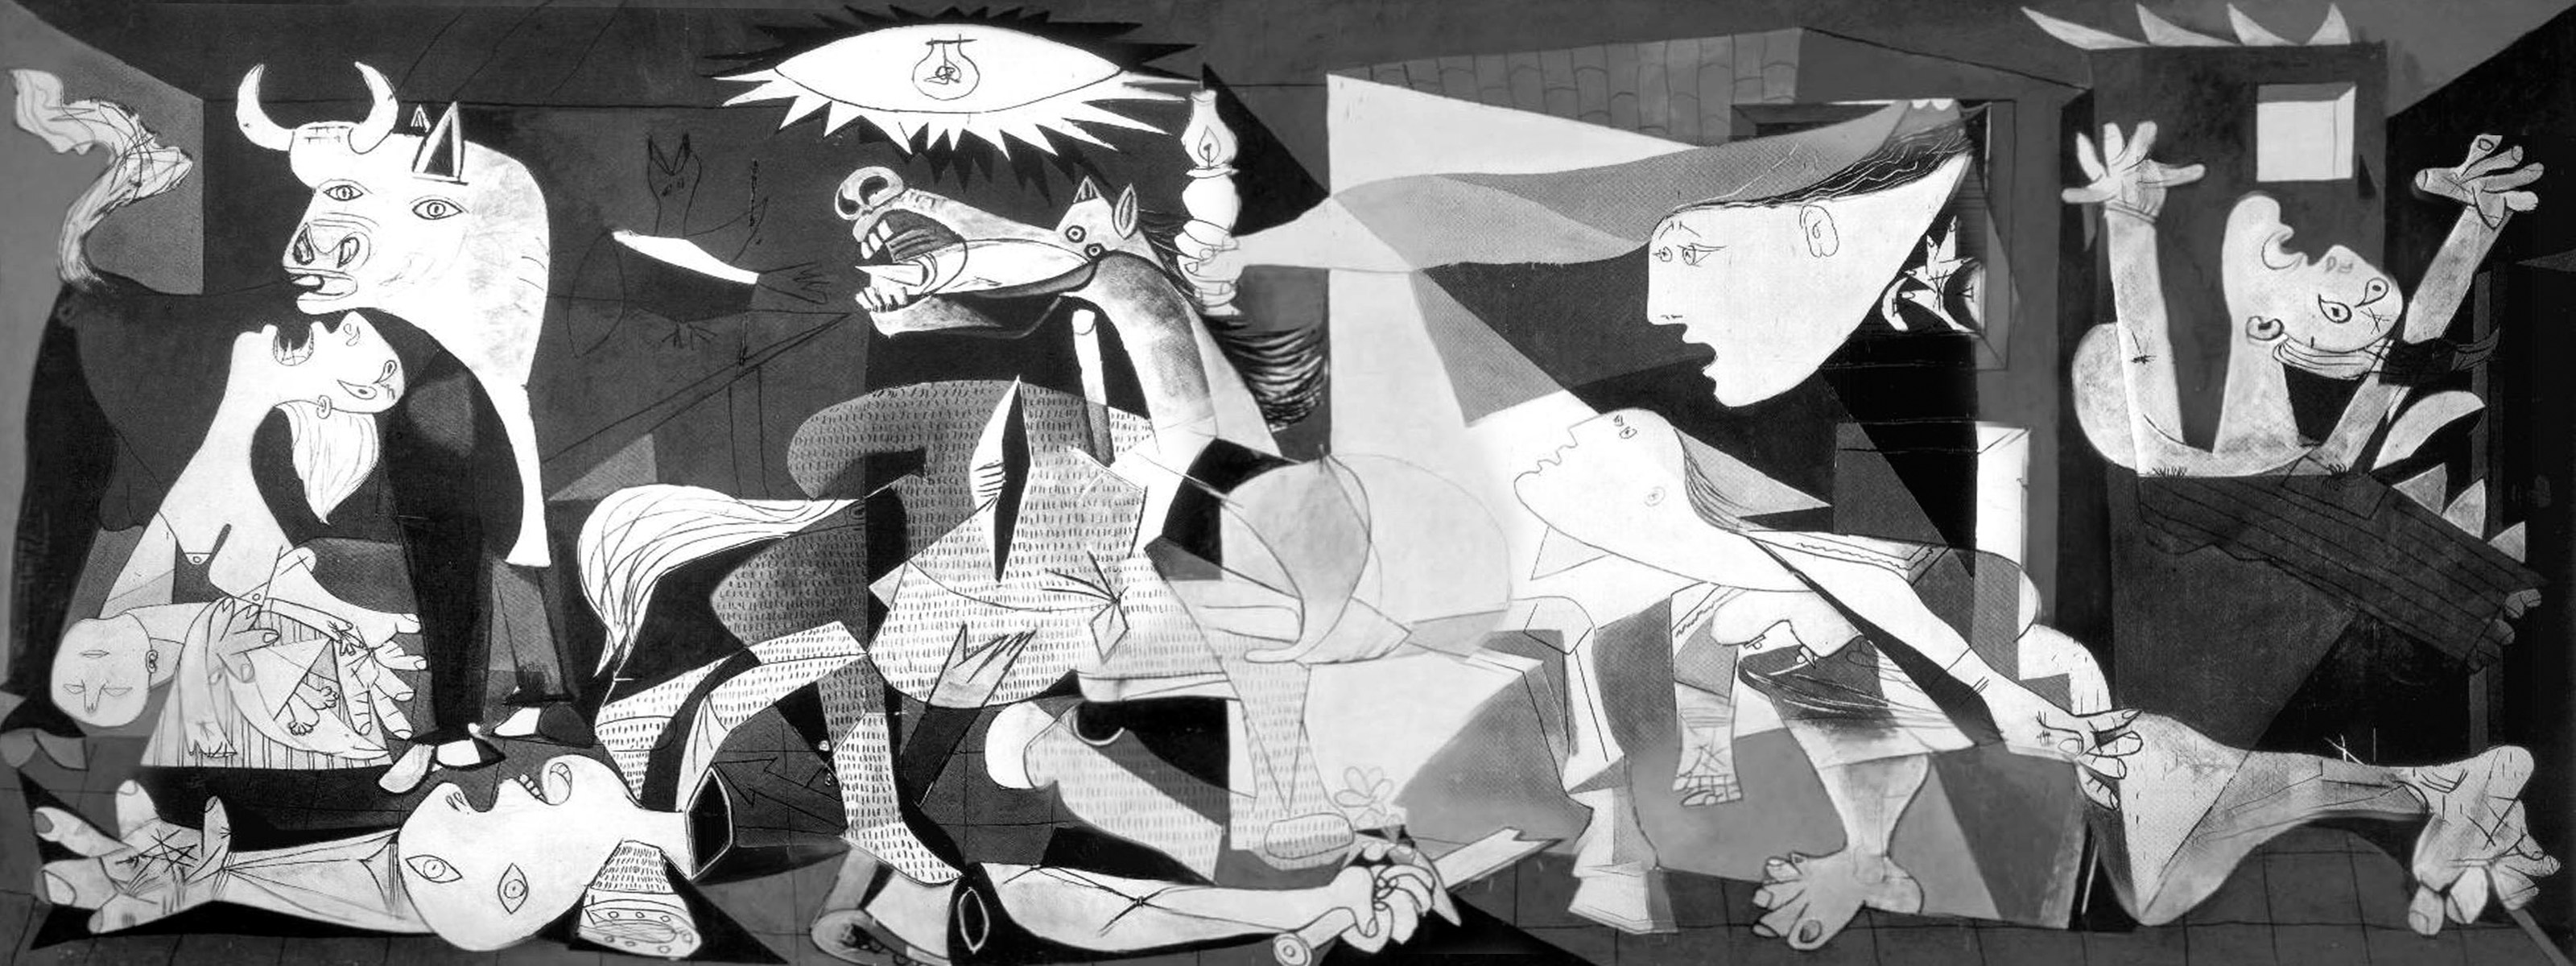 Picassos maleri Guernica ble kjent som et anti-krigs symbol som viste den logiske feilslutningen krig ofte er, et enten eller argument. Kun en side, ett perspektiv er vist i maleriet.